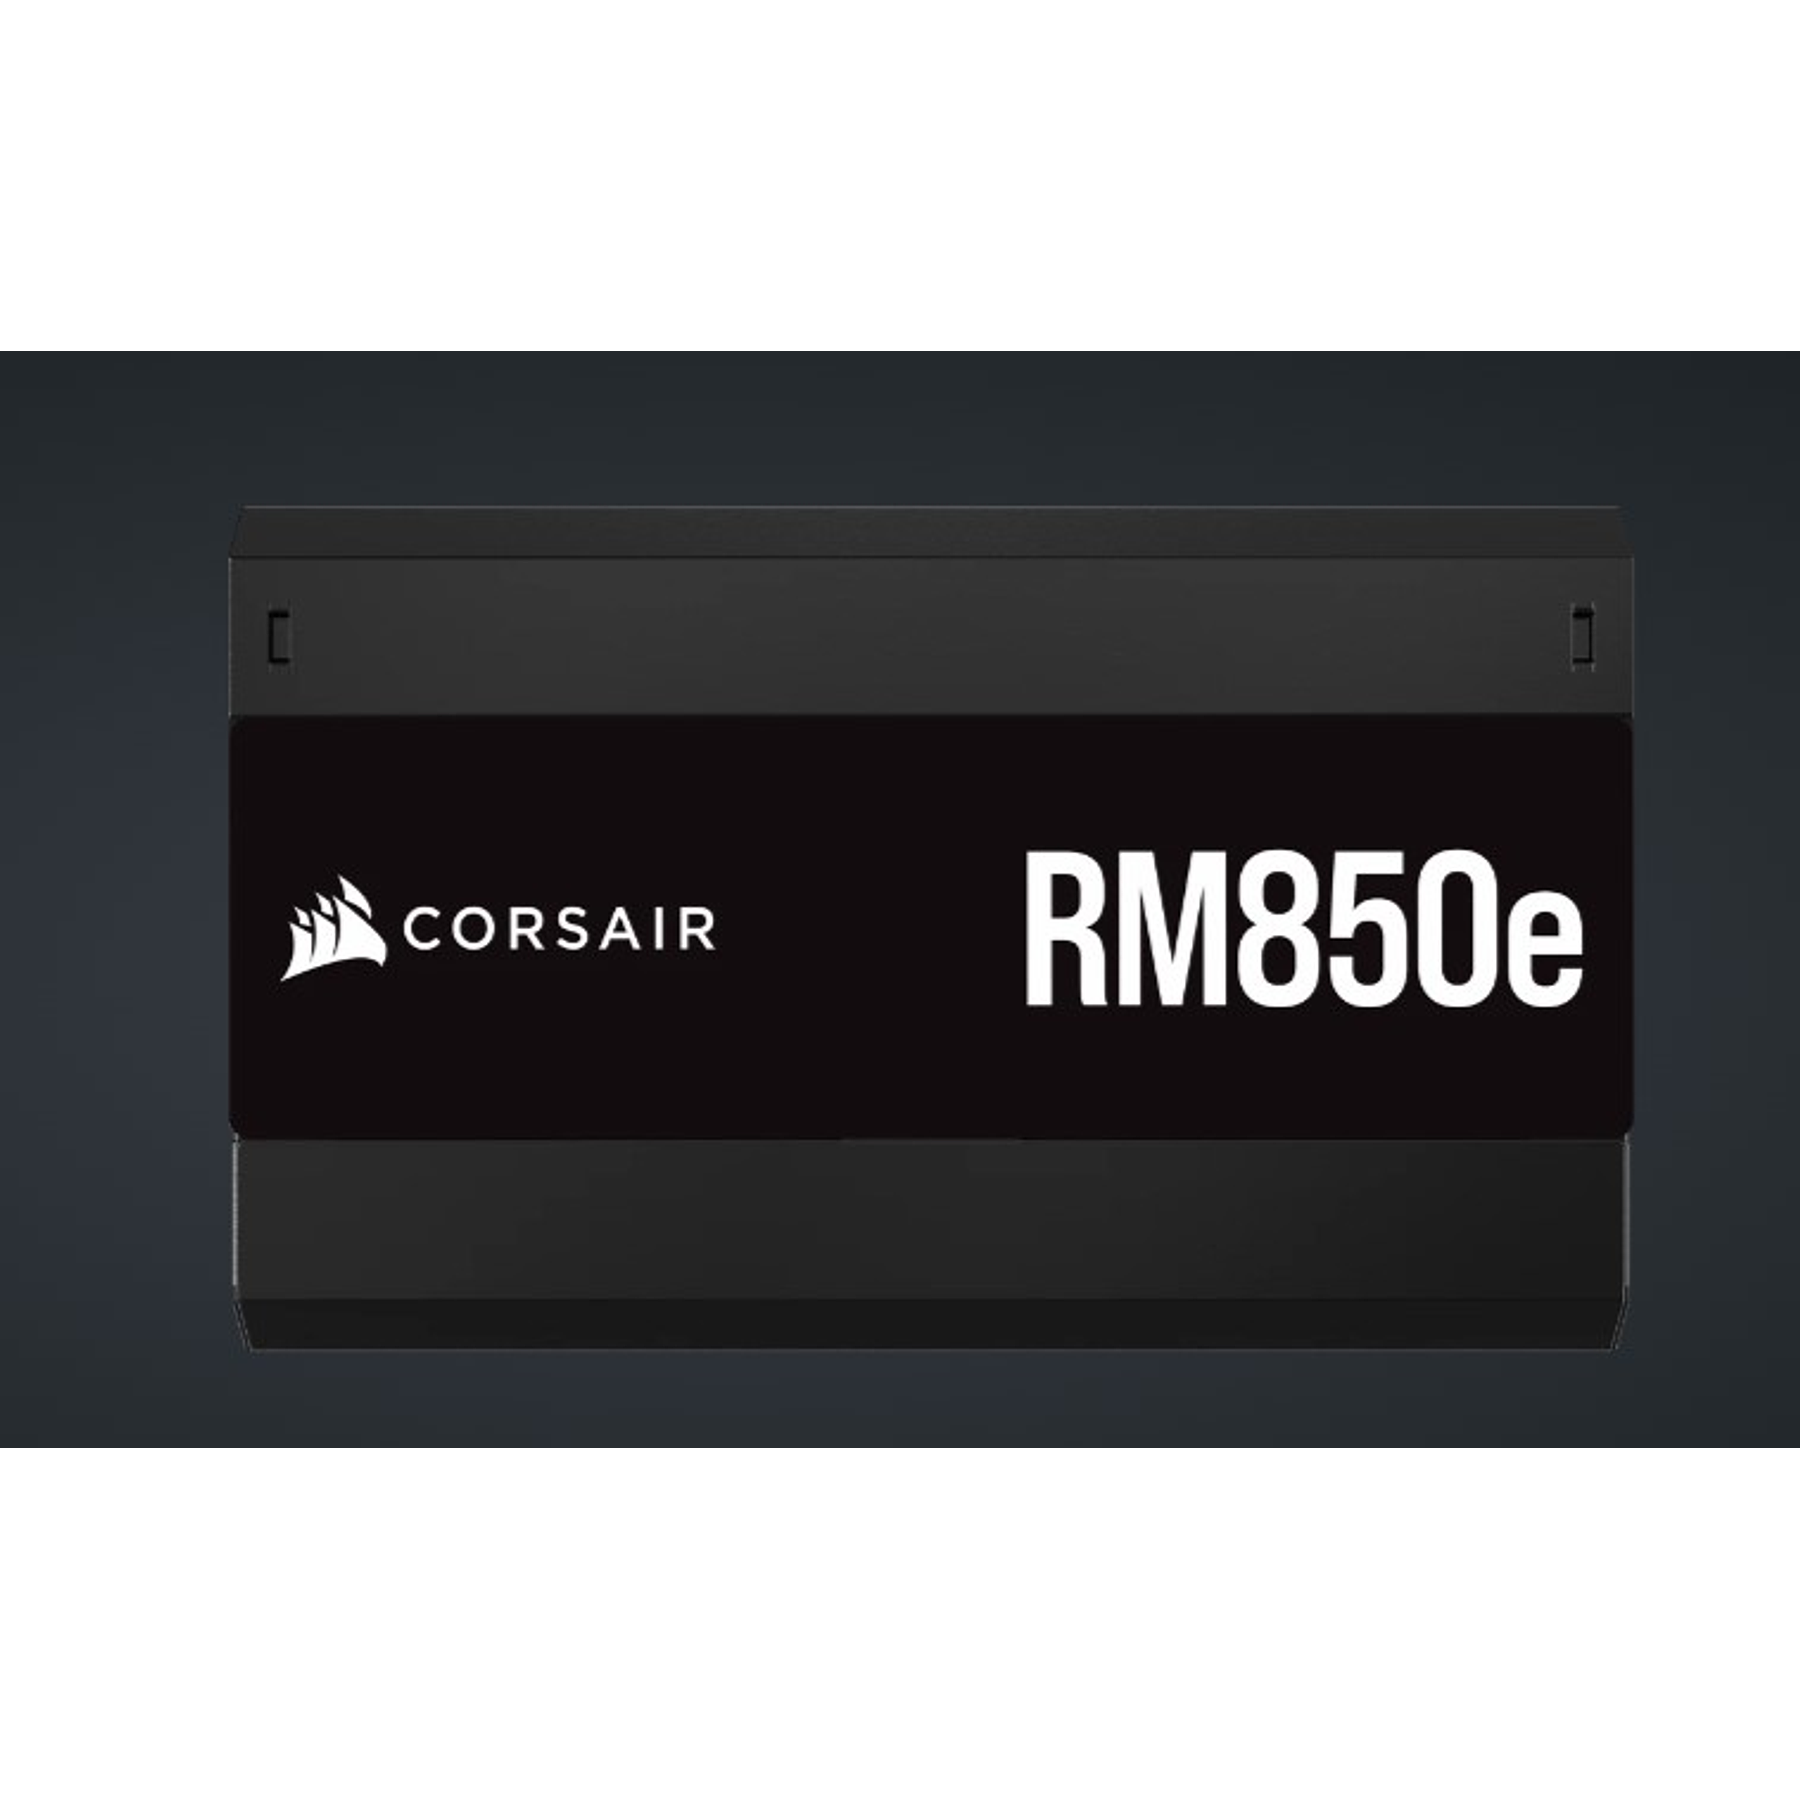 Fuente de Poder Corsair RM850e de 850W 